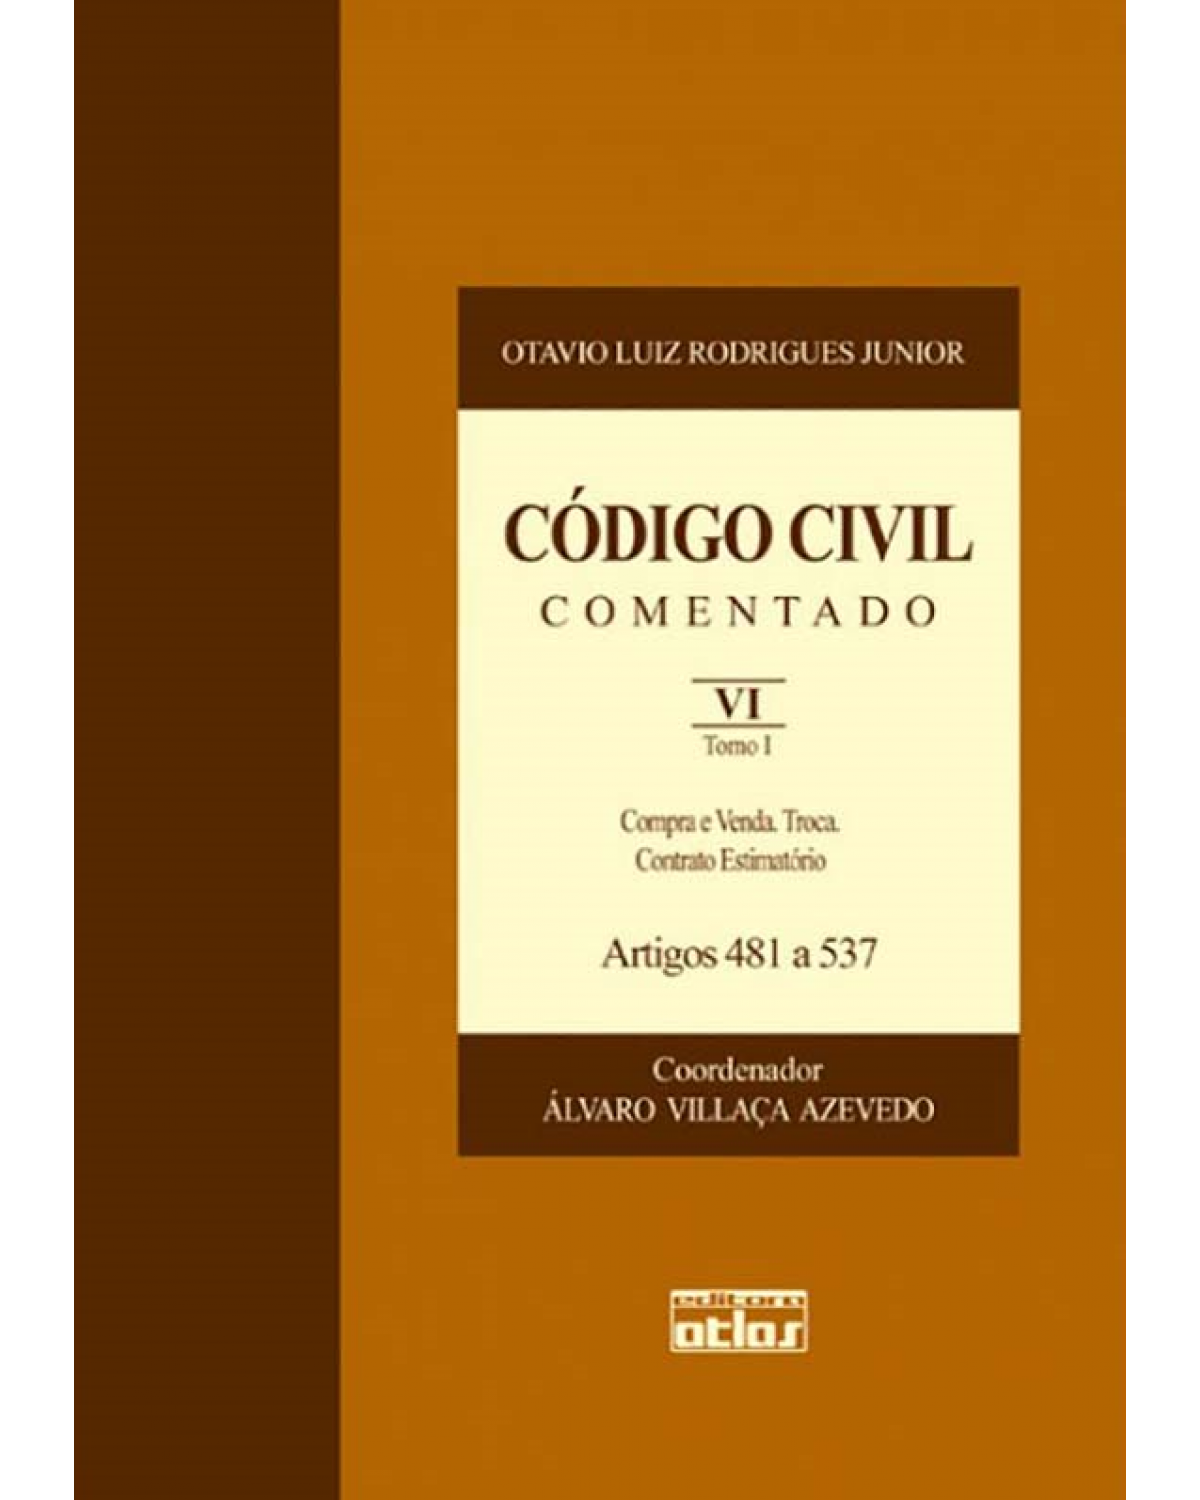 Código civil comentado - Volume 6: Compra e venda. Troca. Contrato estimatório - Artigos 481 a 537 - Tomo I - 1ª Edição | 2008